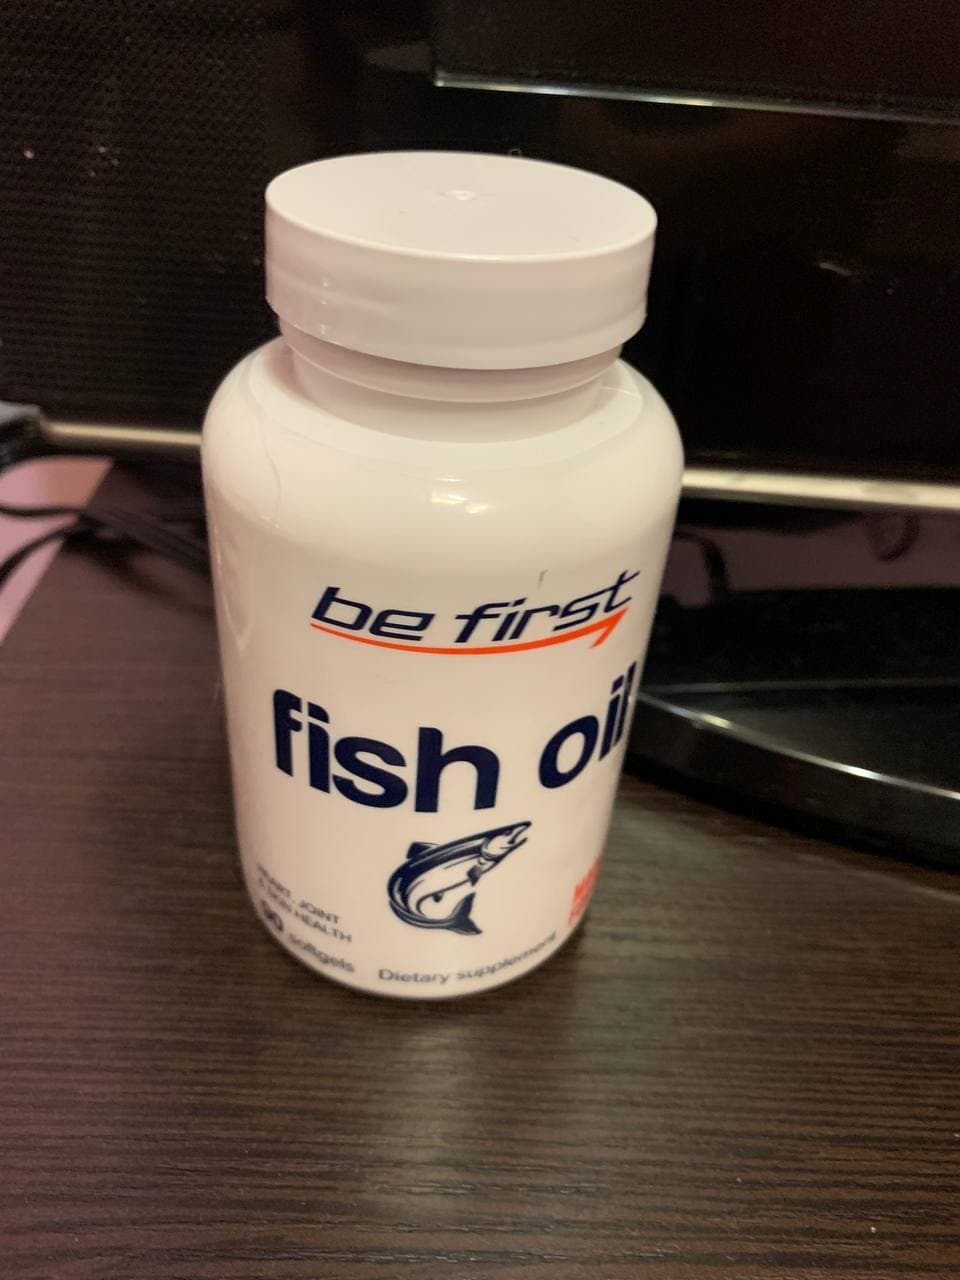 Be First Рыбный жир Fish Oil - Очень качественный продукт